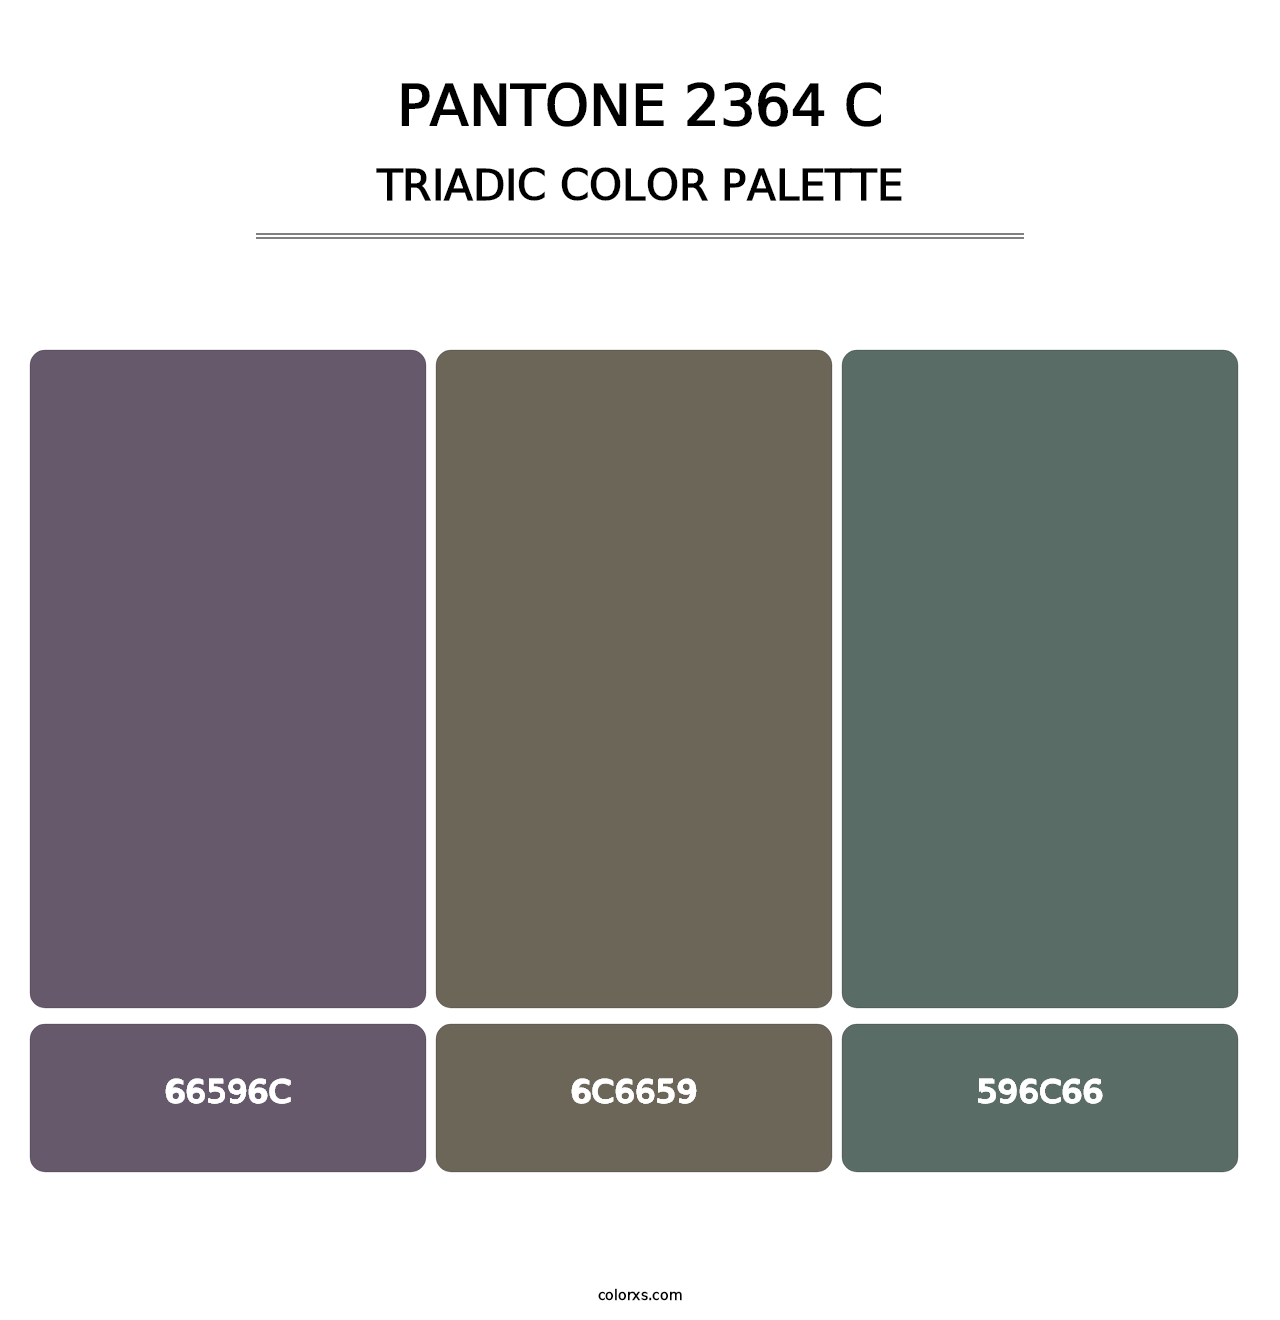 PANTONE 2364 C - Triadic Color Palette